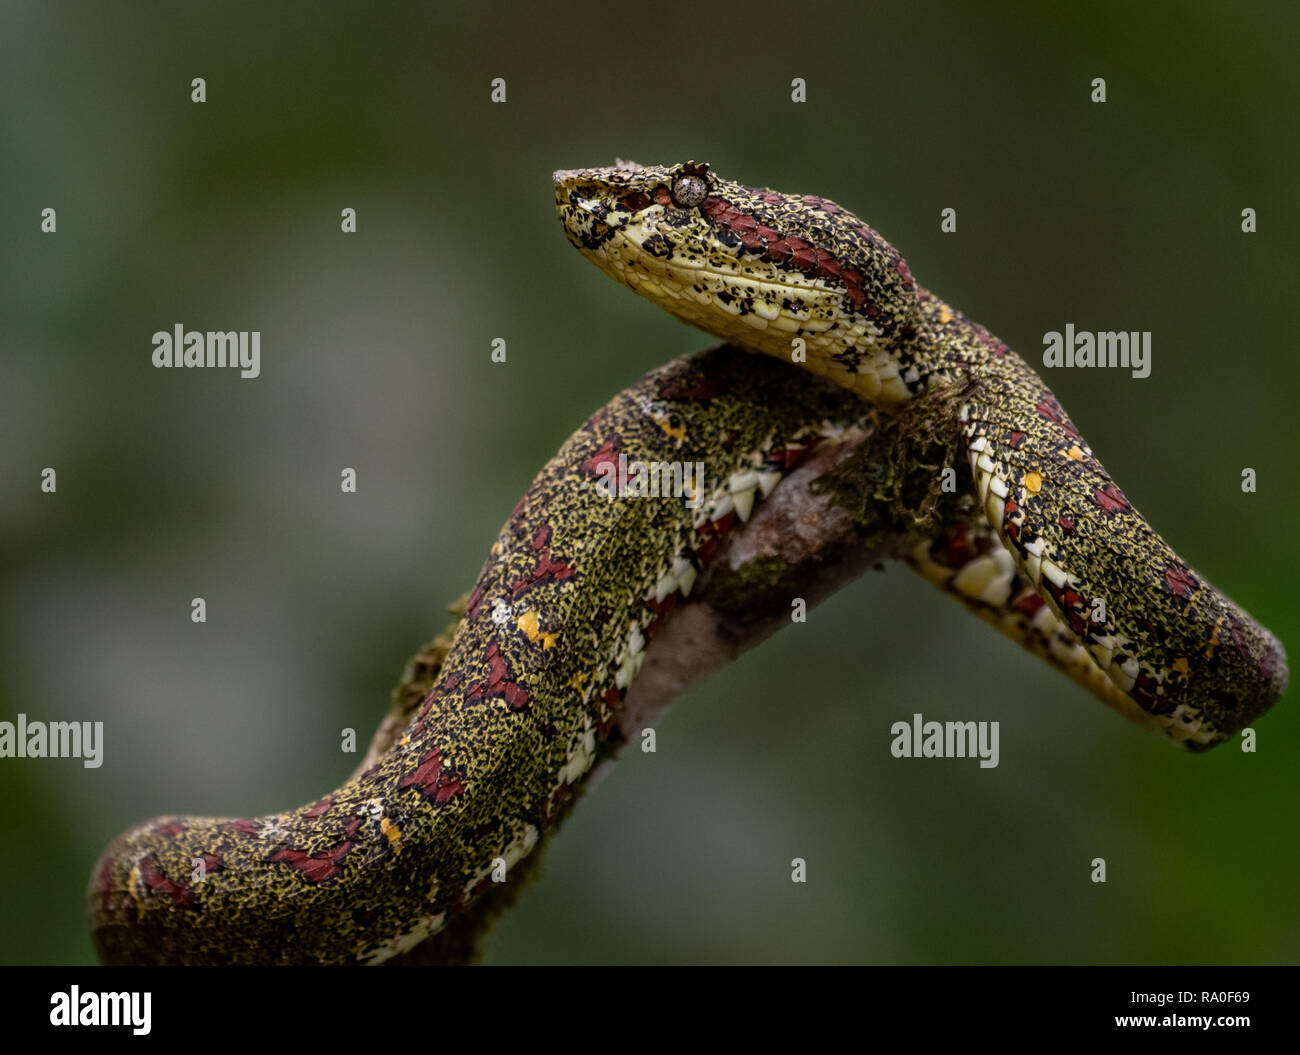 Eyelash Viper Snake on Tree Branch Stock Photo